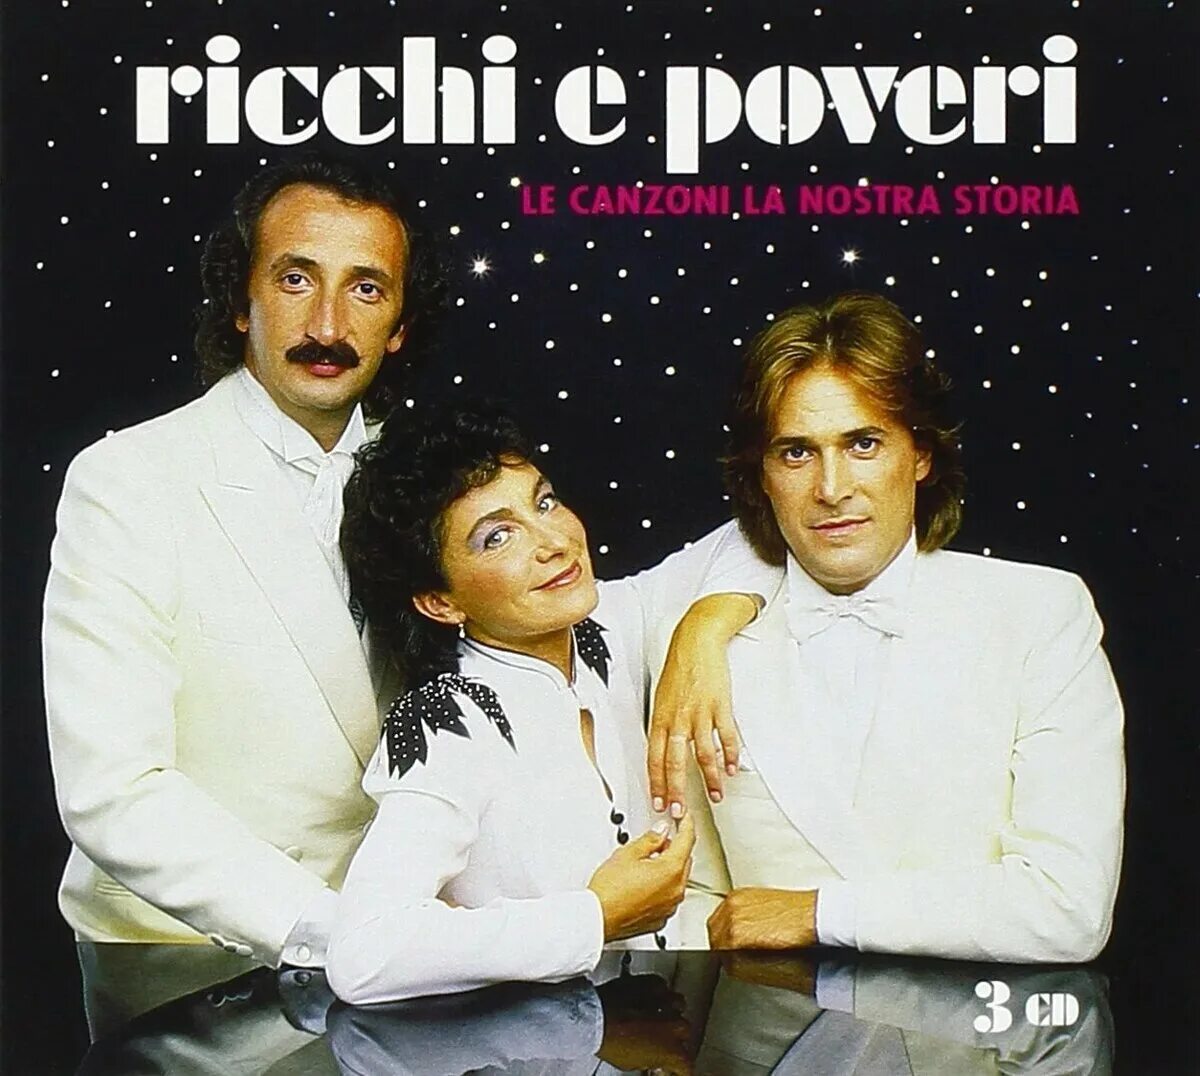 Группа Ricchi e Poveri. Группа Ricchi e Poveri сейчас. Группа Рики и повери. Итальянская группа Рикки и повери. Песни рикки э